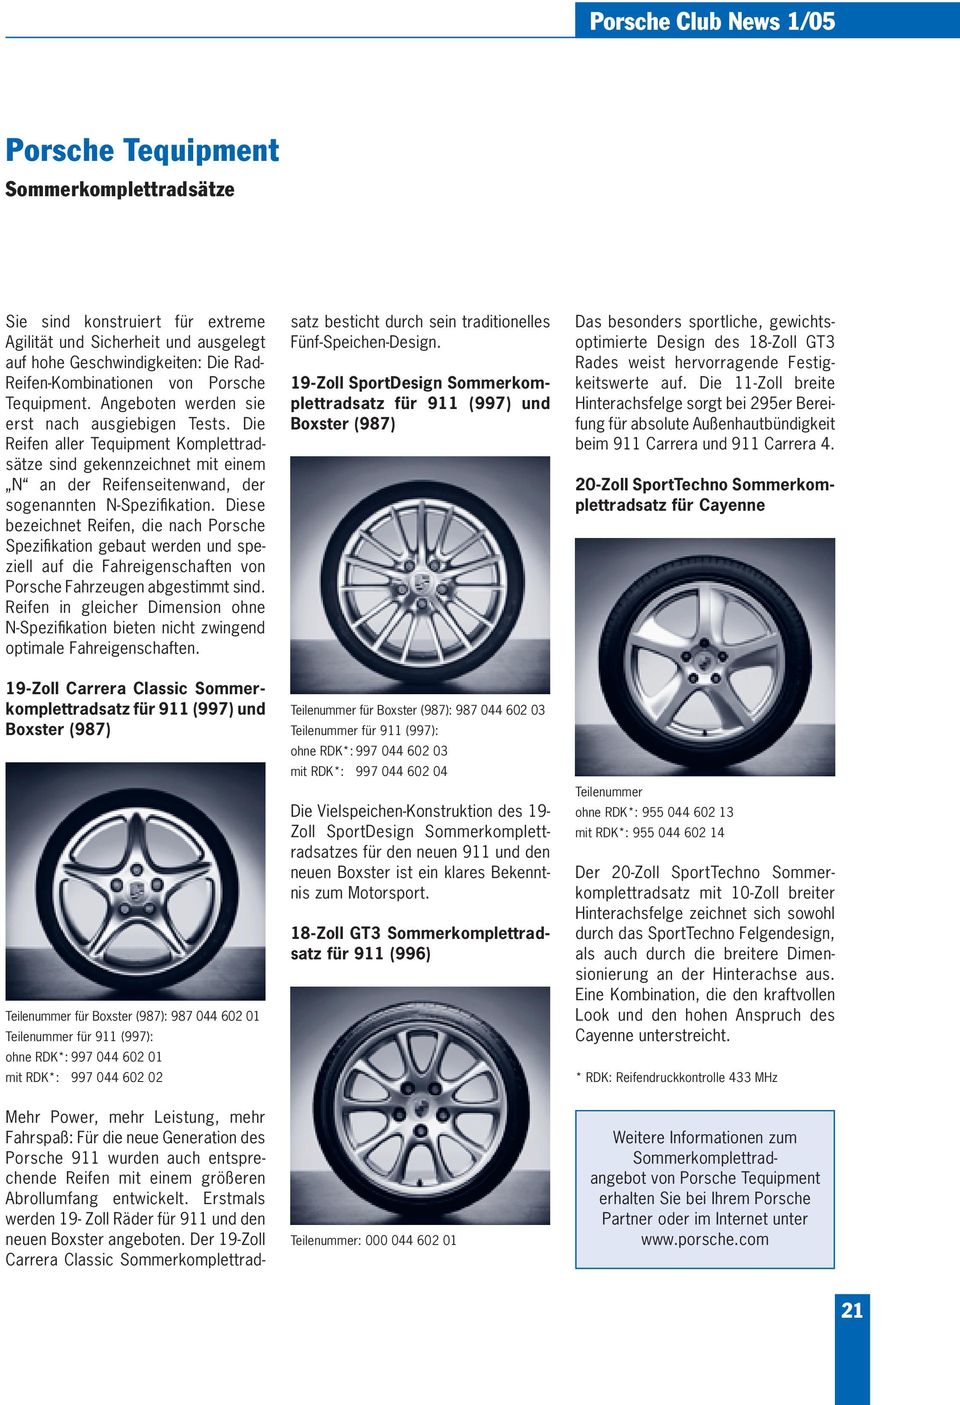 Diese bezeichnet Reifen, die nach Porsche Spezifikation gebaut werden und speziell auf die Fahreigenschaften von Porsche Fahrzeugen abgestimmt sind.